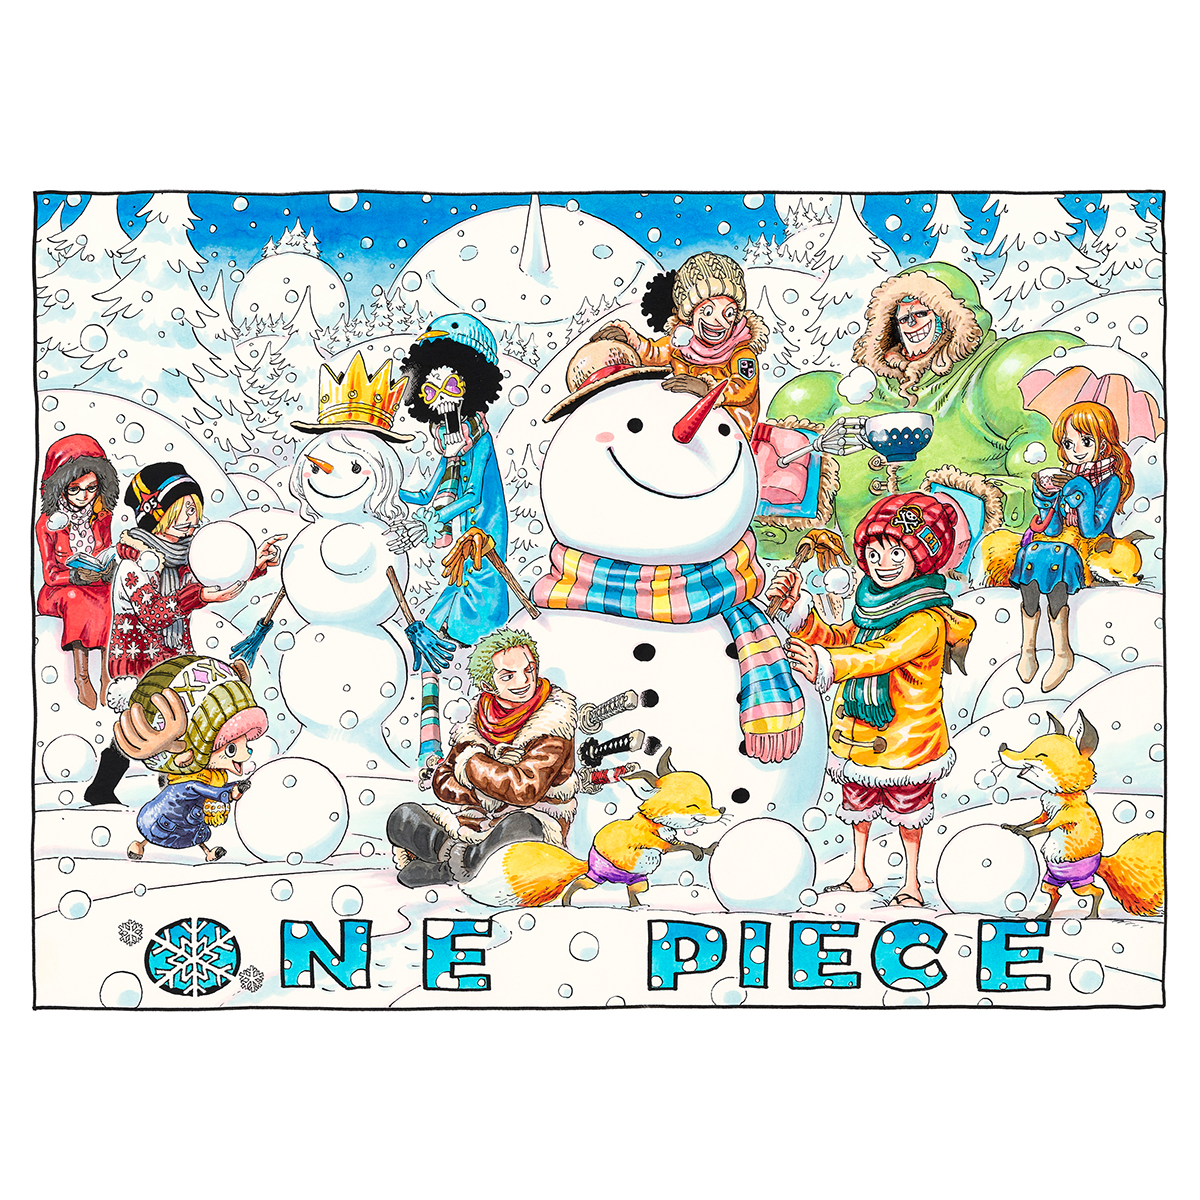 集英社マンガアートヘリテージ 尾田栄一郎 One Piece Winterwaltz 作品を販売開始 株式会社集英社のプレスリリース